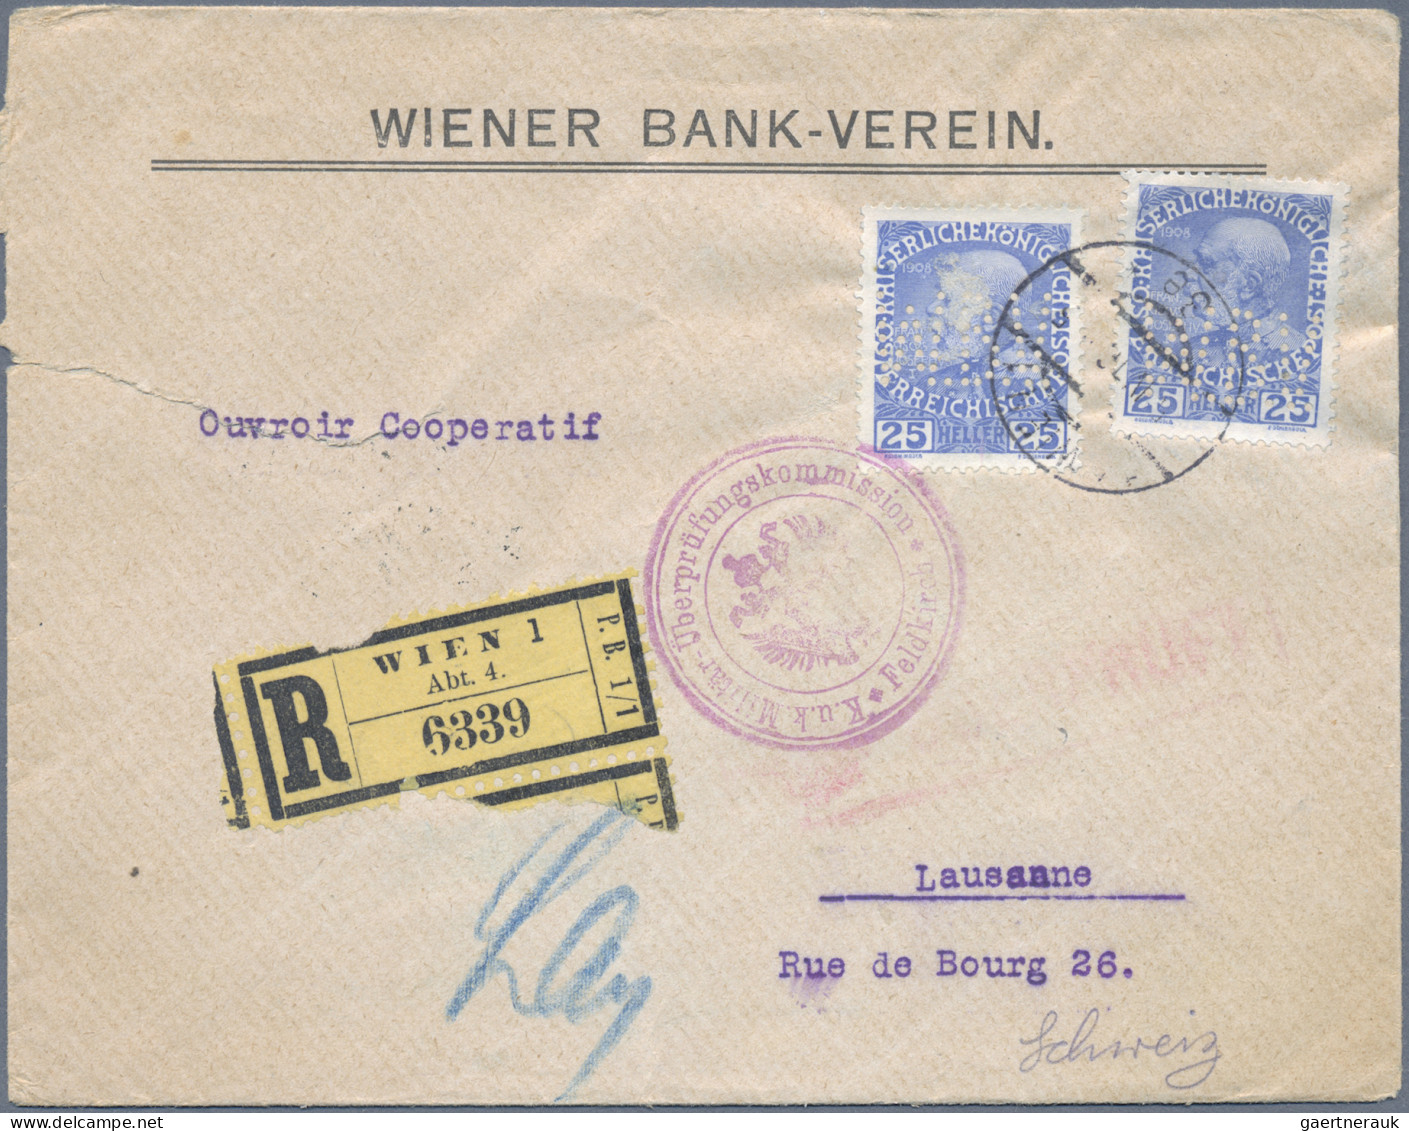 Österreich: 1900/1980 (ca.), vielseitige Partie von ca. 230 Briefen und Karten,